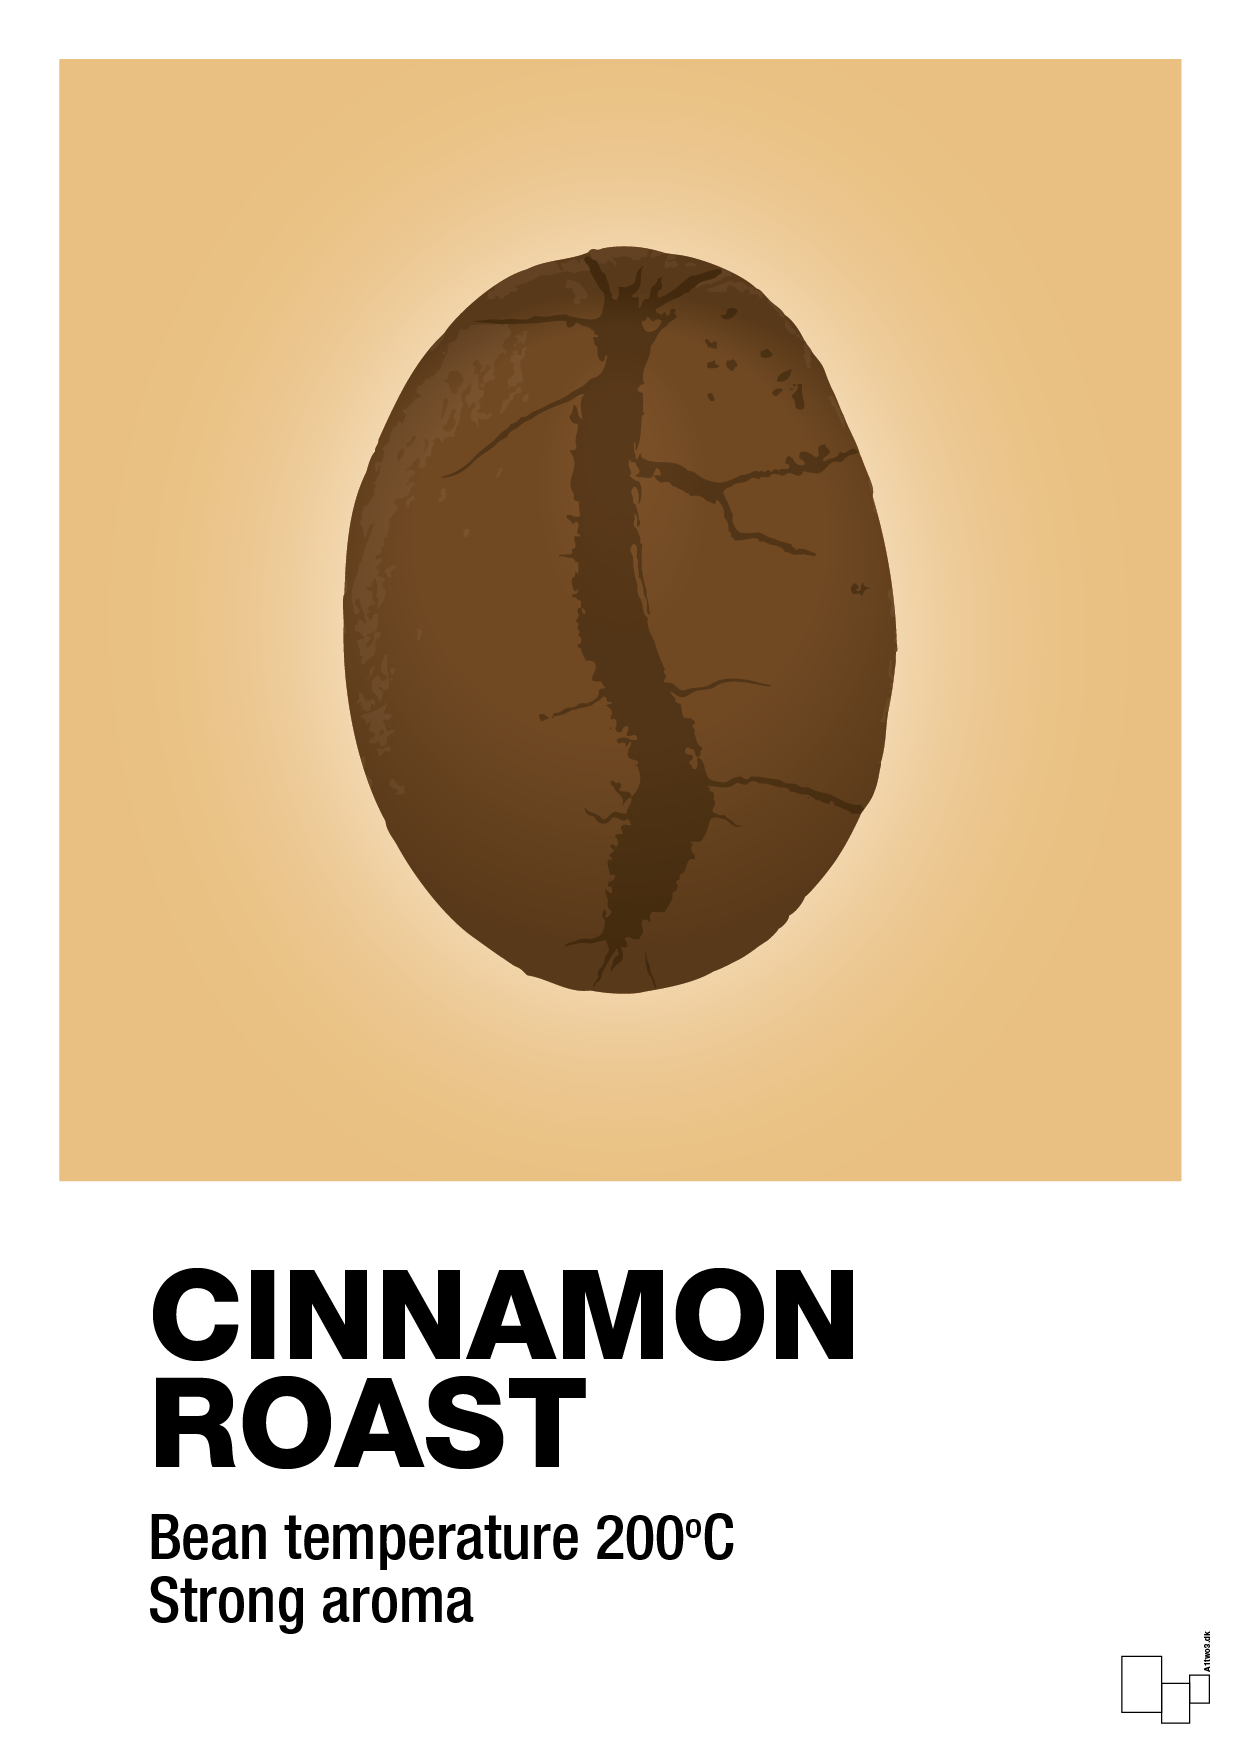 cinnamom roast - Plakat med Mad & Drikke i Charismatic